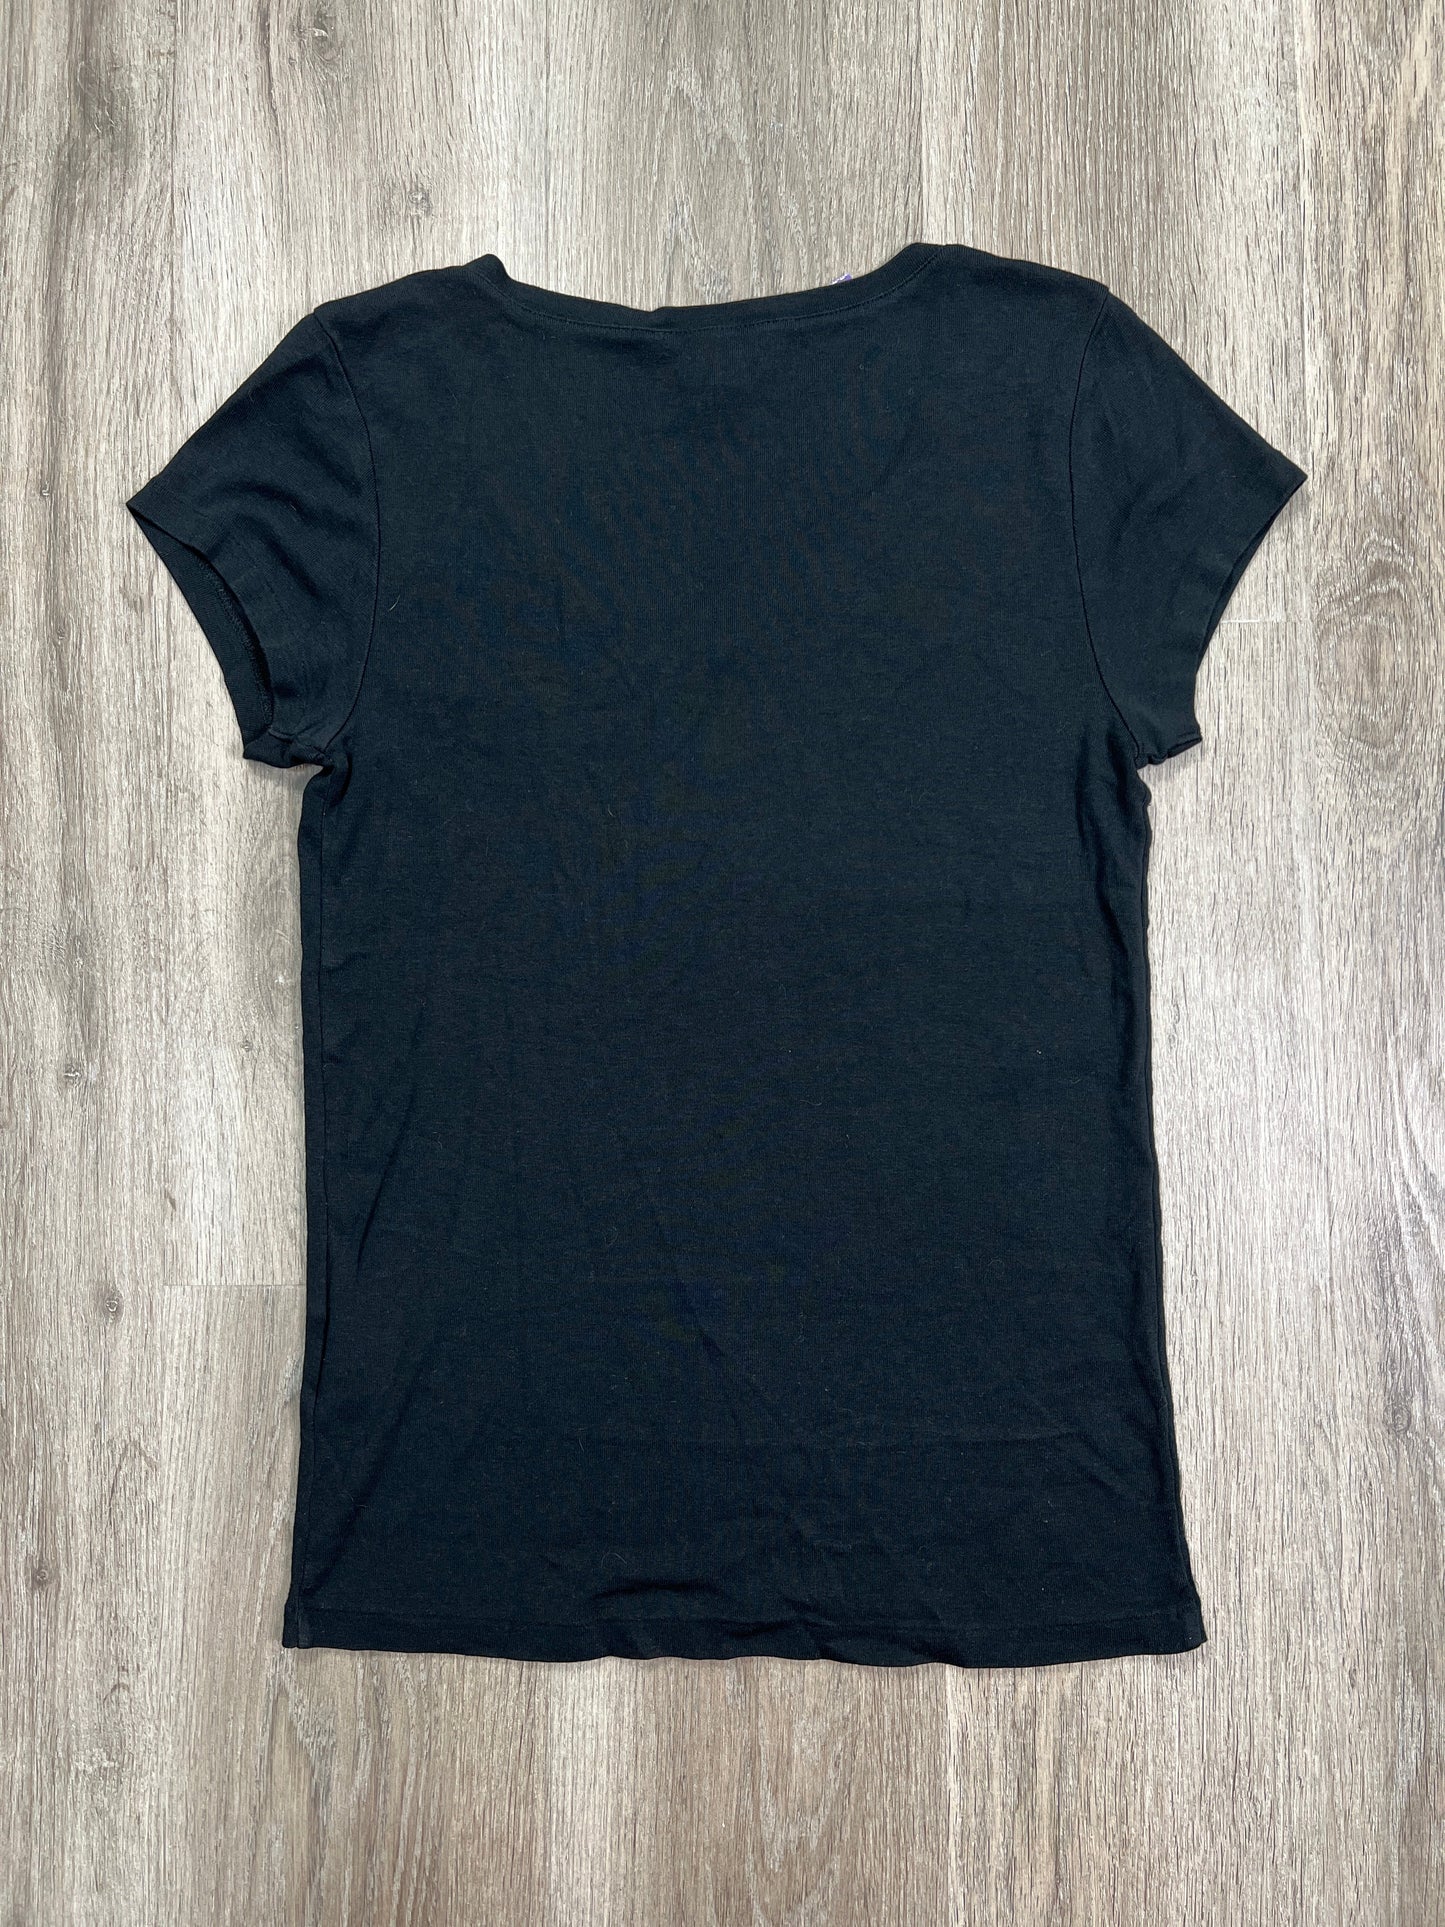 Top Short Sleeve Basic By Ralph Lauren  Size: Xl